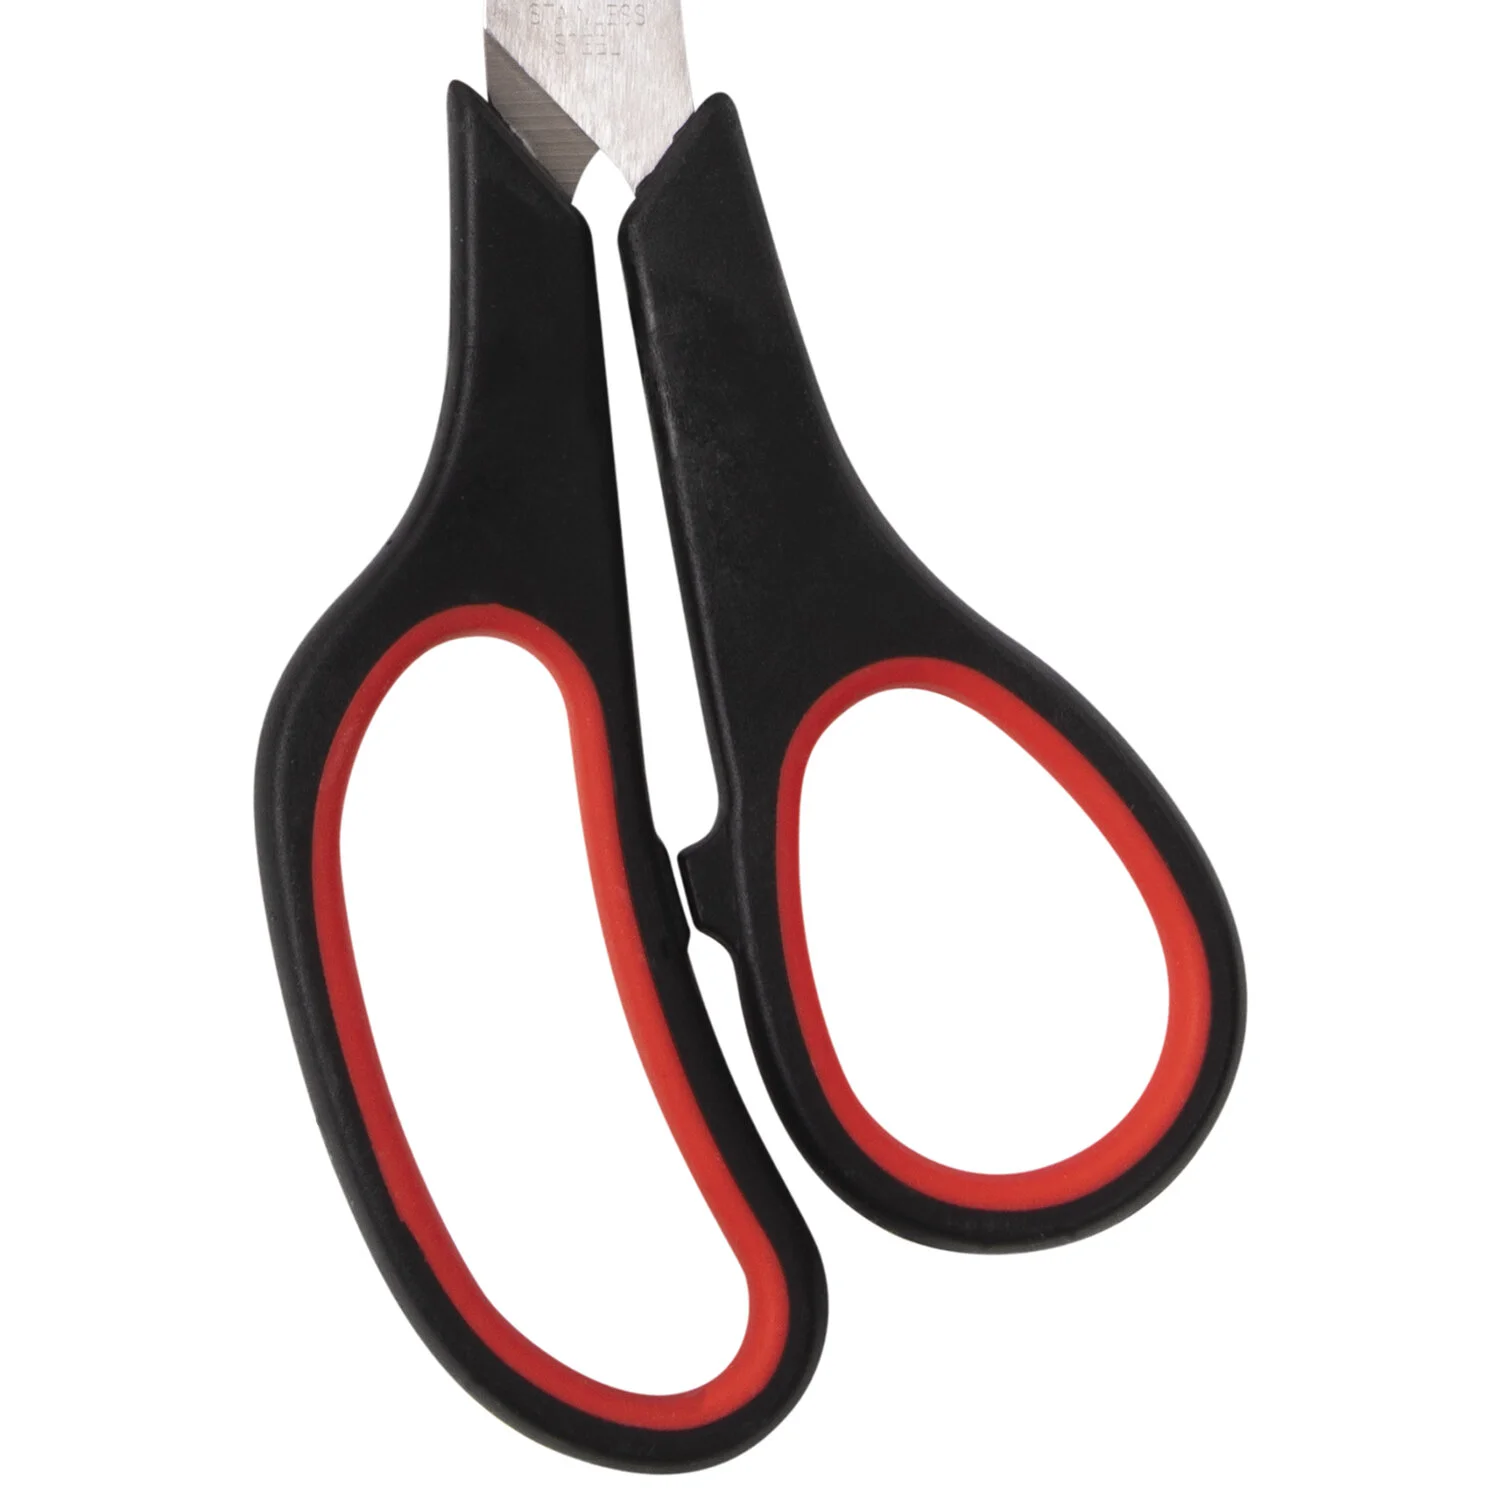 Ножницы STAFF EVERYDAY 215 мм, резиновые вставки, черно-красные, ПВХ чехол